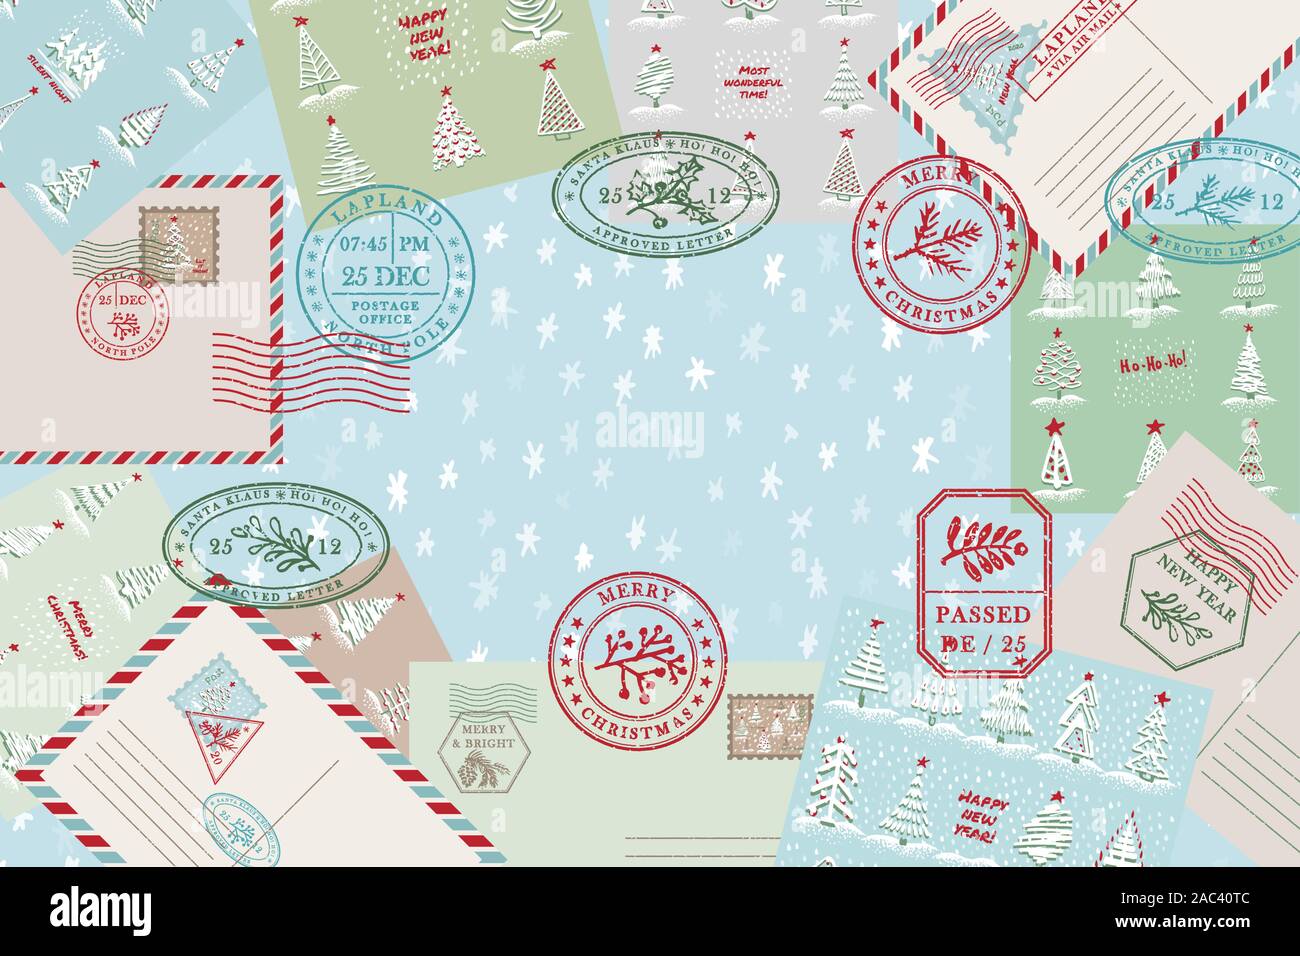 Feier Hintergrund mit Vintage Air Mail Postkarte und Umschlag, strukturierte grunge Weihnachten porto Stempel Weihnachten Urlaub Symbole in Stock Vektor